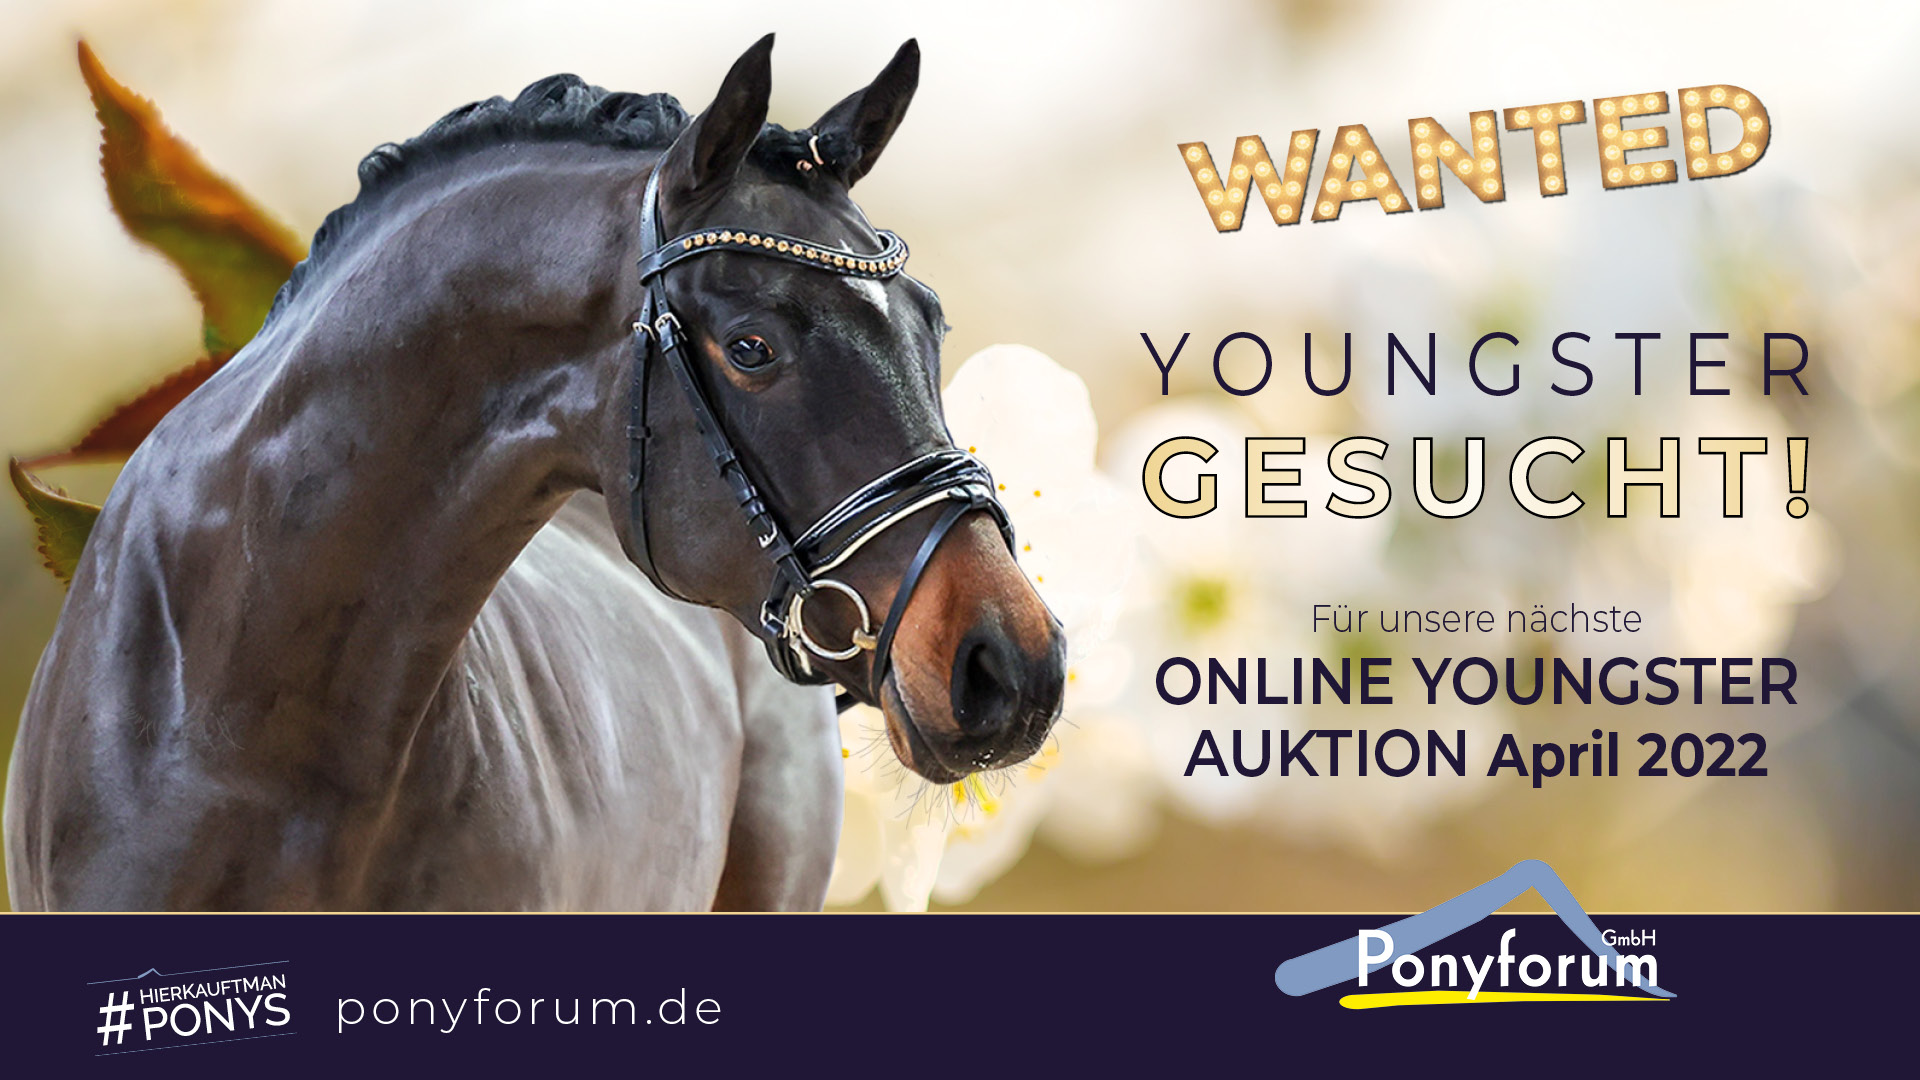 Ponyforum GmbH: Nächste Youngsterauktion im April